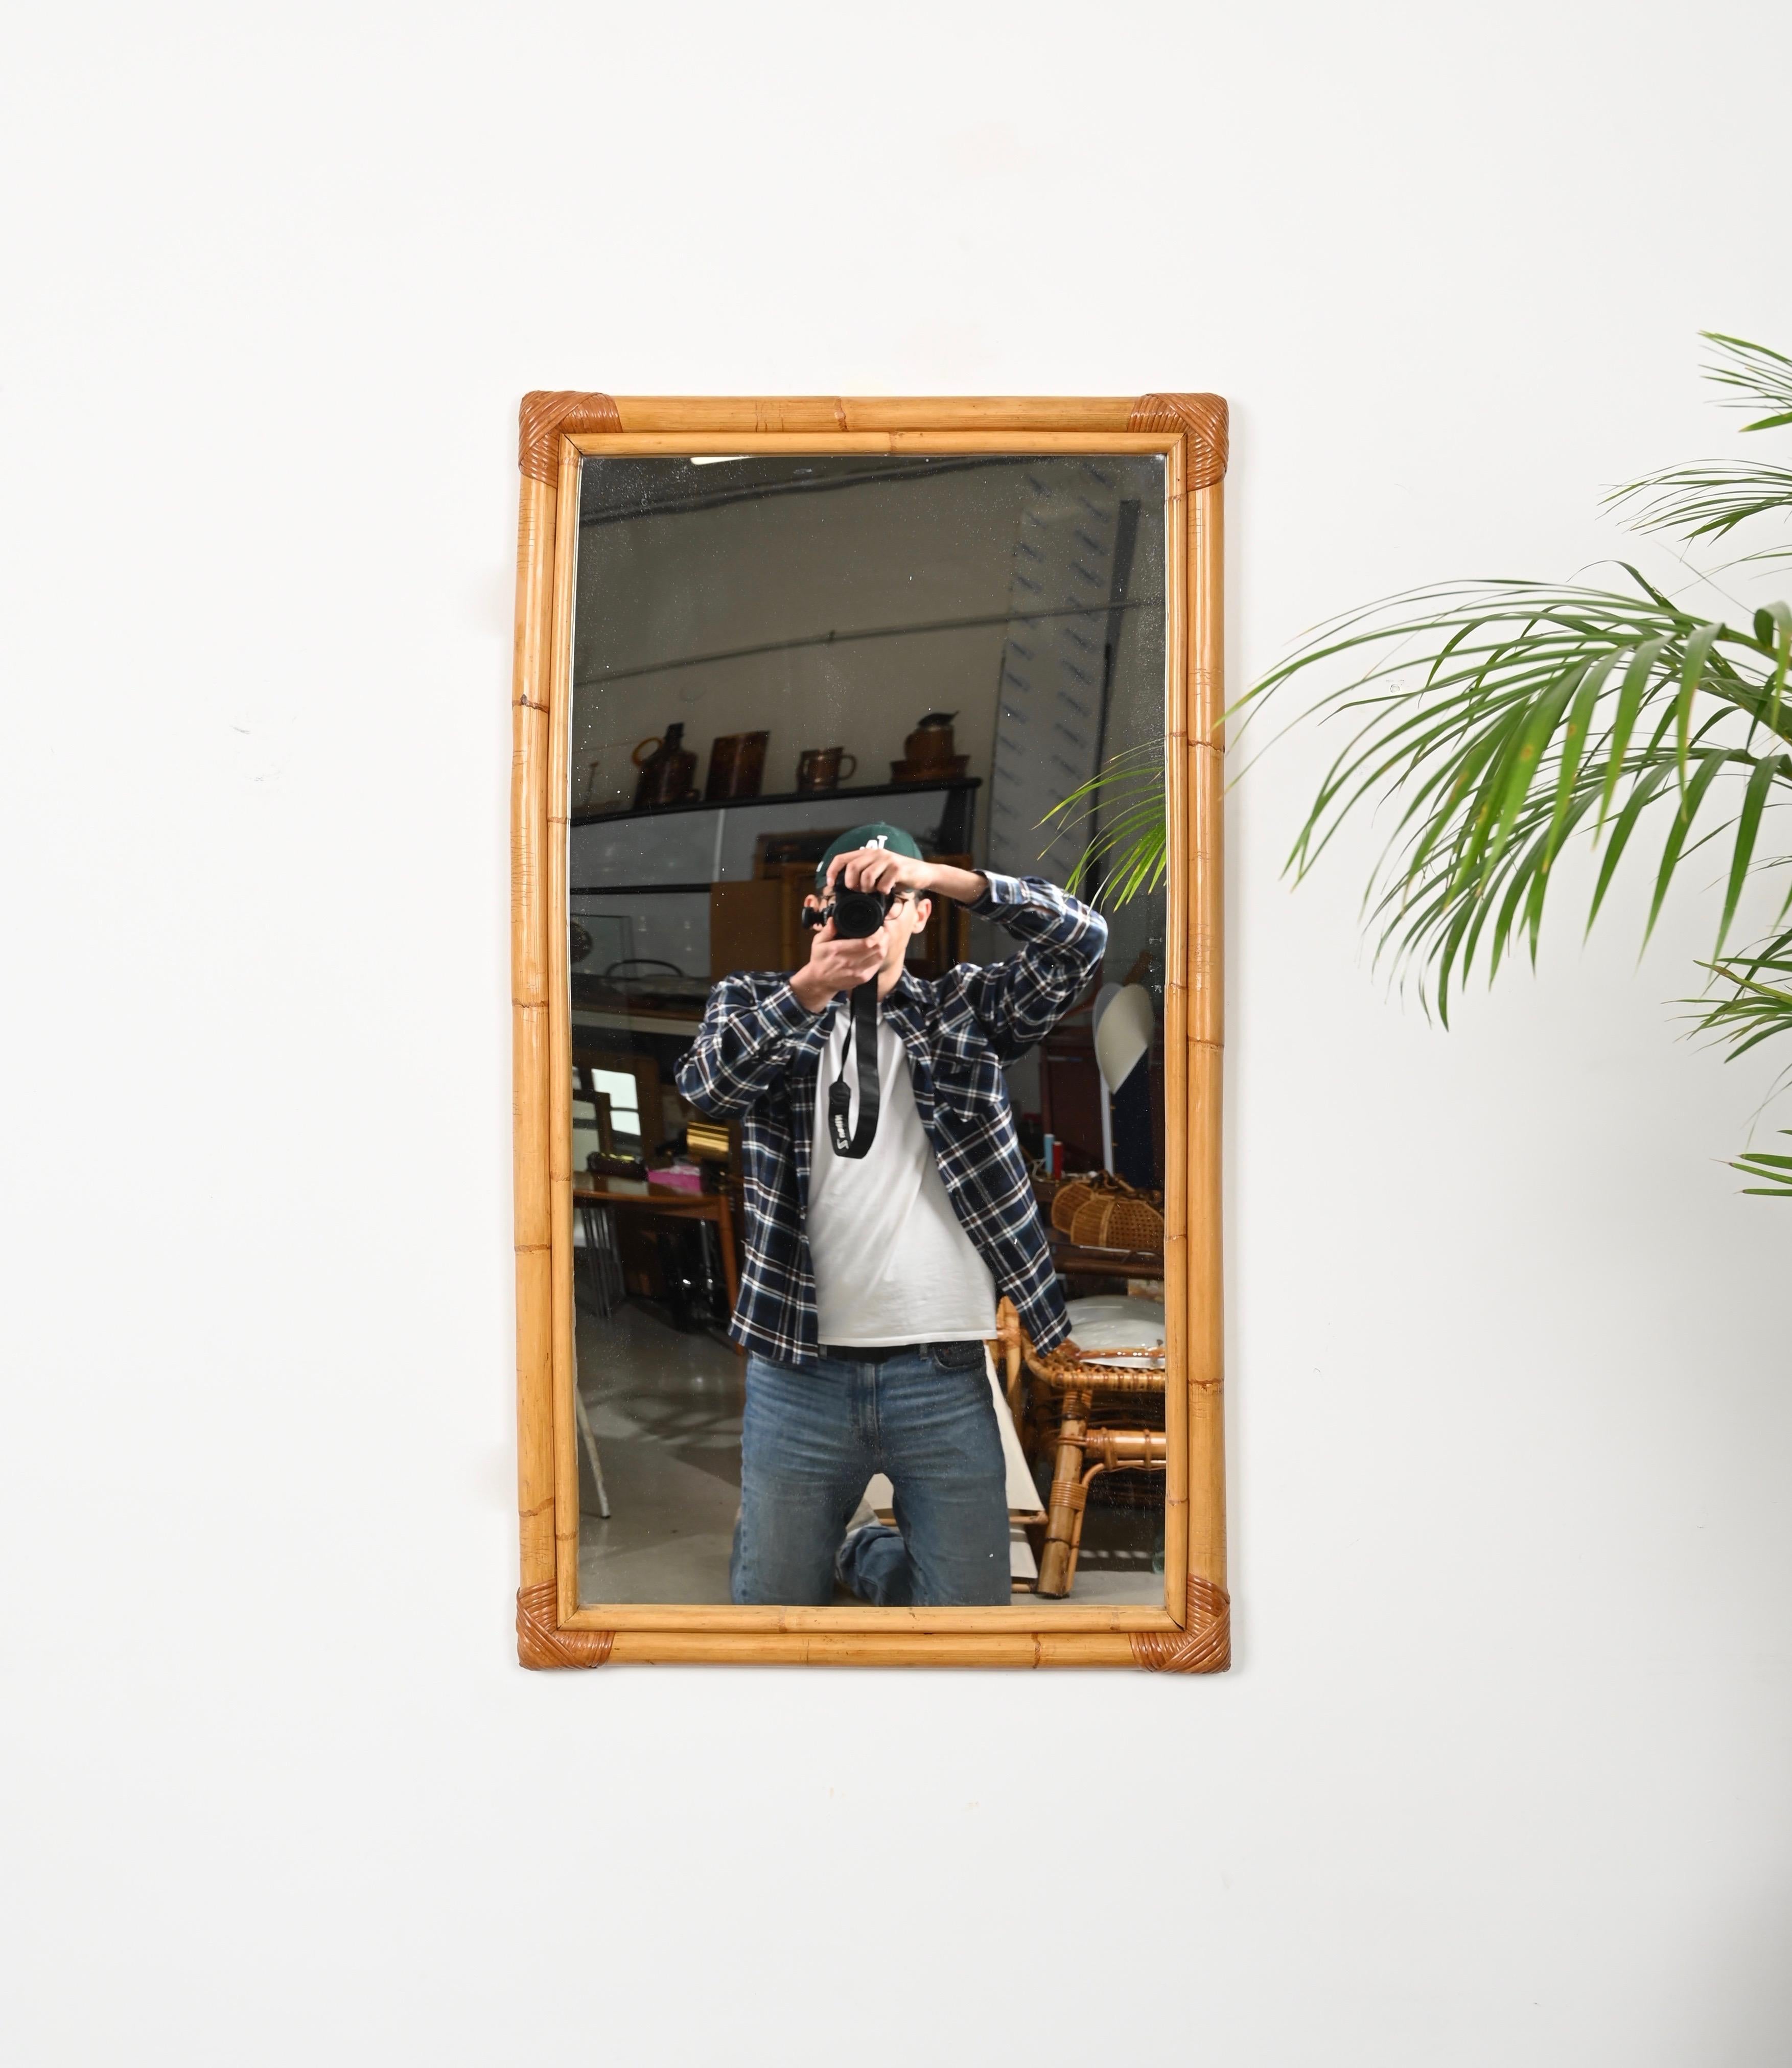 Charmant miroir rectangulaire du milieu du siècle dernier, entièrement réalisé en bambou et en rotin tressé à la main. Ce magnifique miroir organique a été produit en Italie dans les années 1970.

Le miroir  se caractérise par un grand cadre